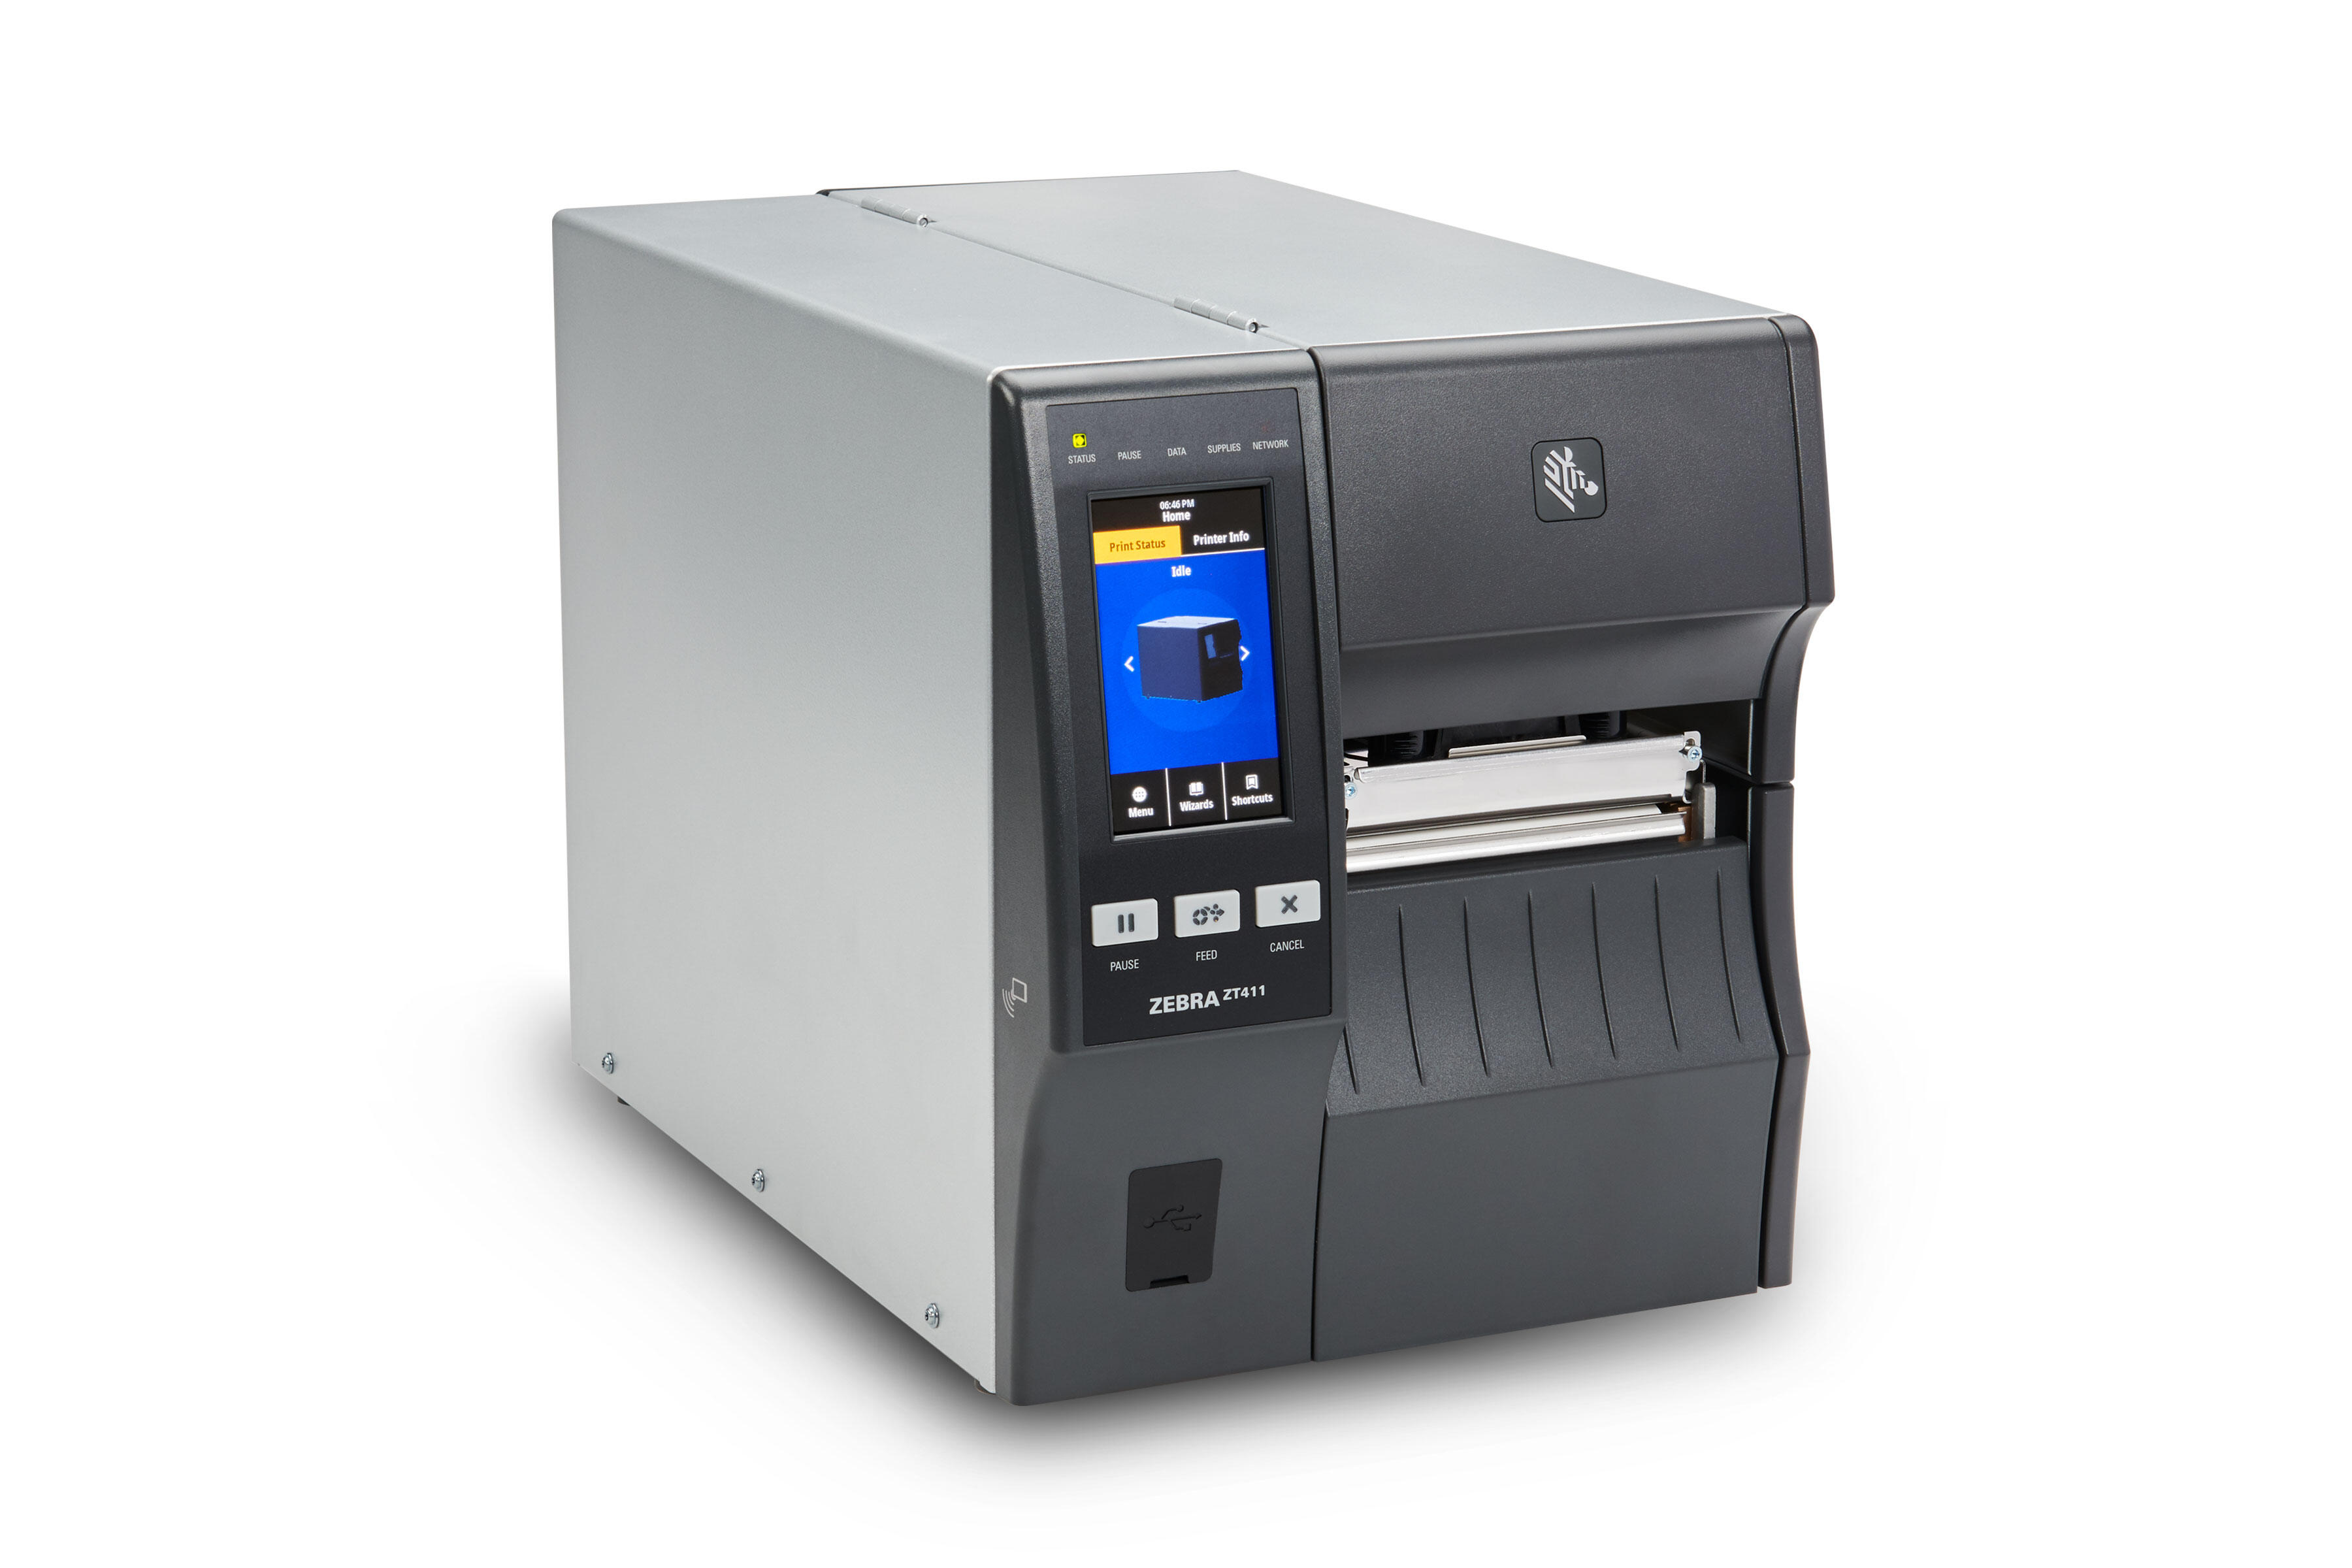 Zt400 series industrial printers